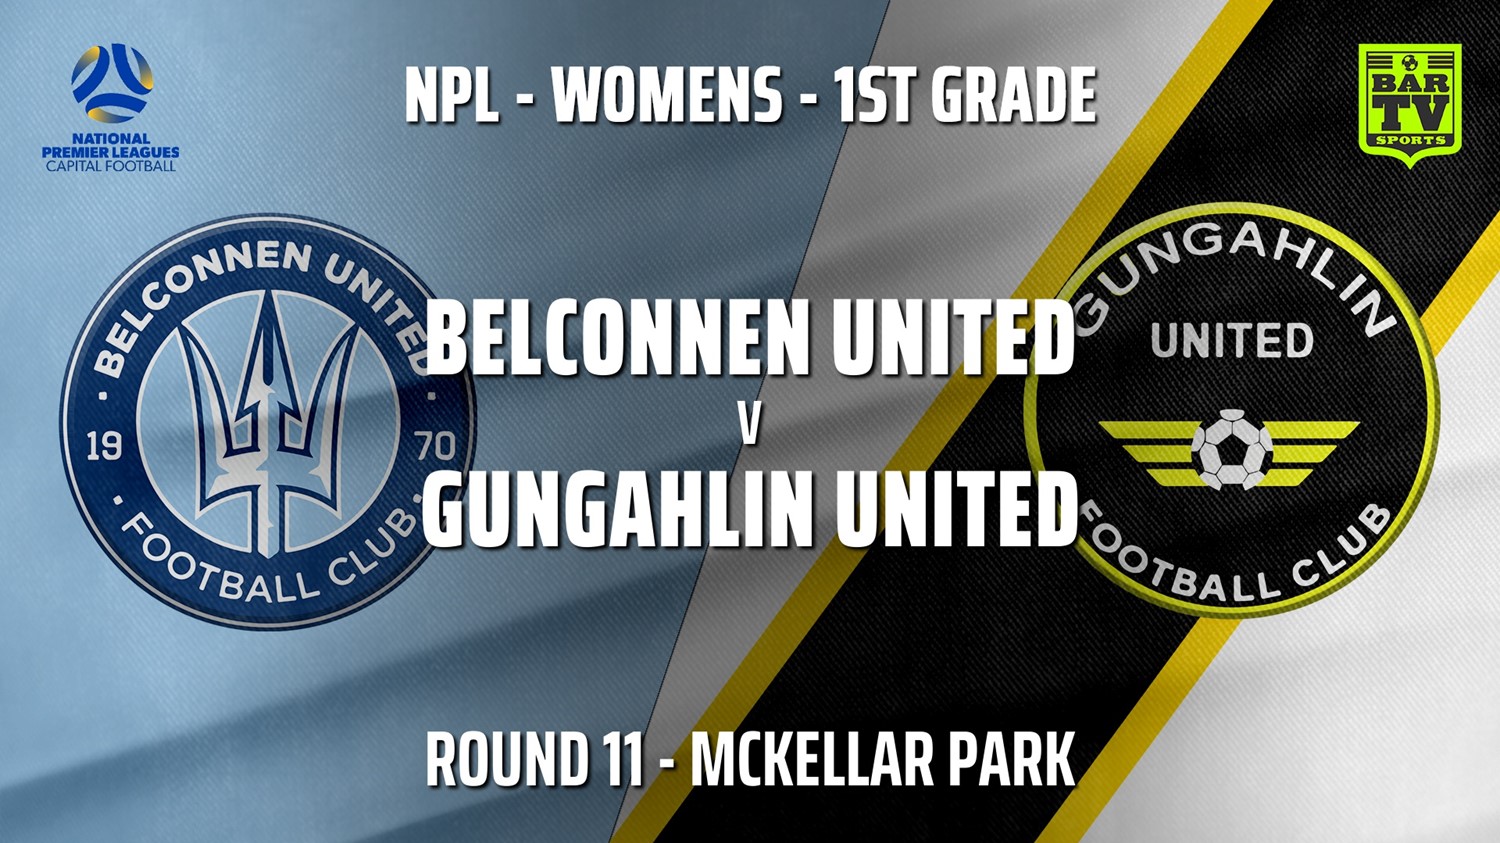 210626-Capital Womens Round 11 - Belconnen United (women) v Gungahlin United FC (women) Slate Image